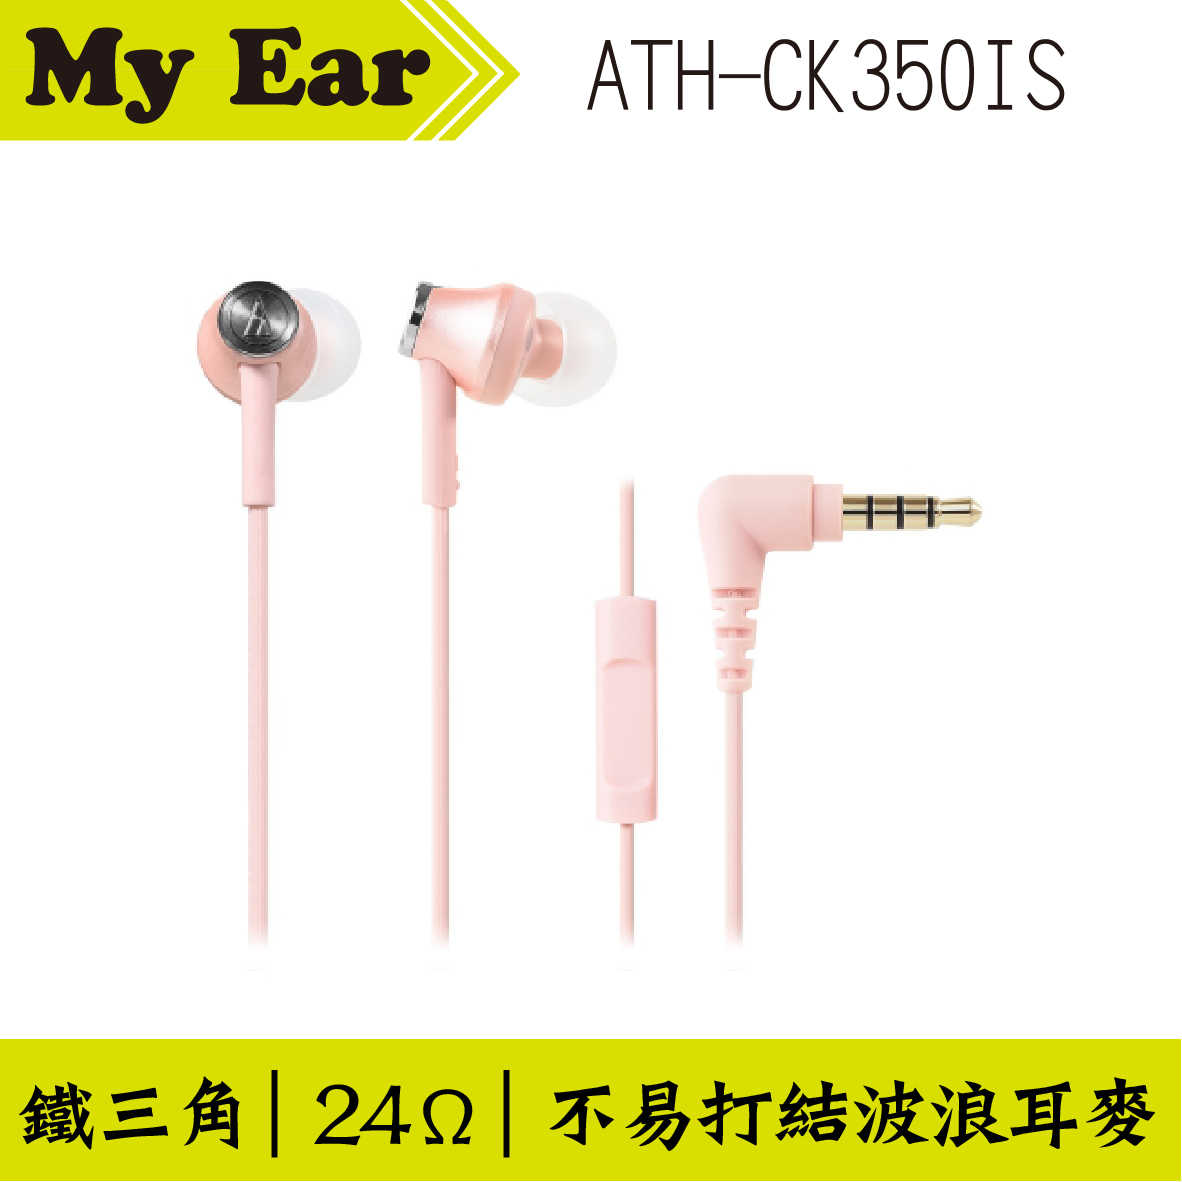 鐵三角 ATH-CK350IS 耳機麥克風 白色  | My Ear 耳機專門店